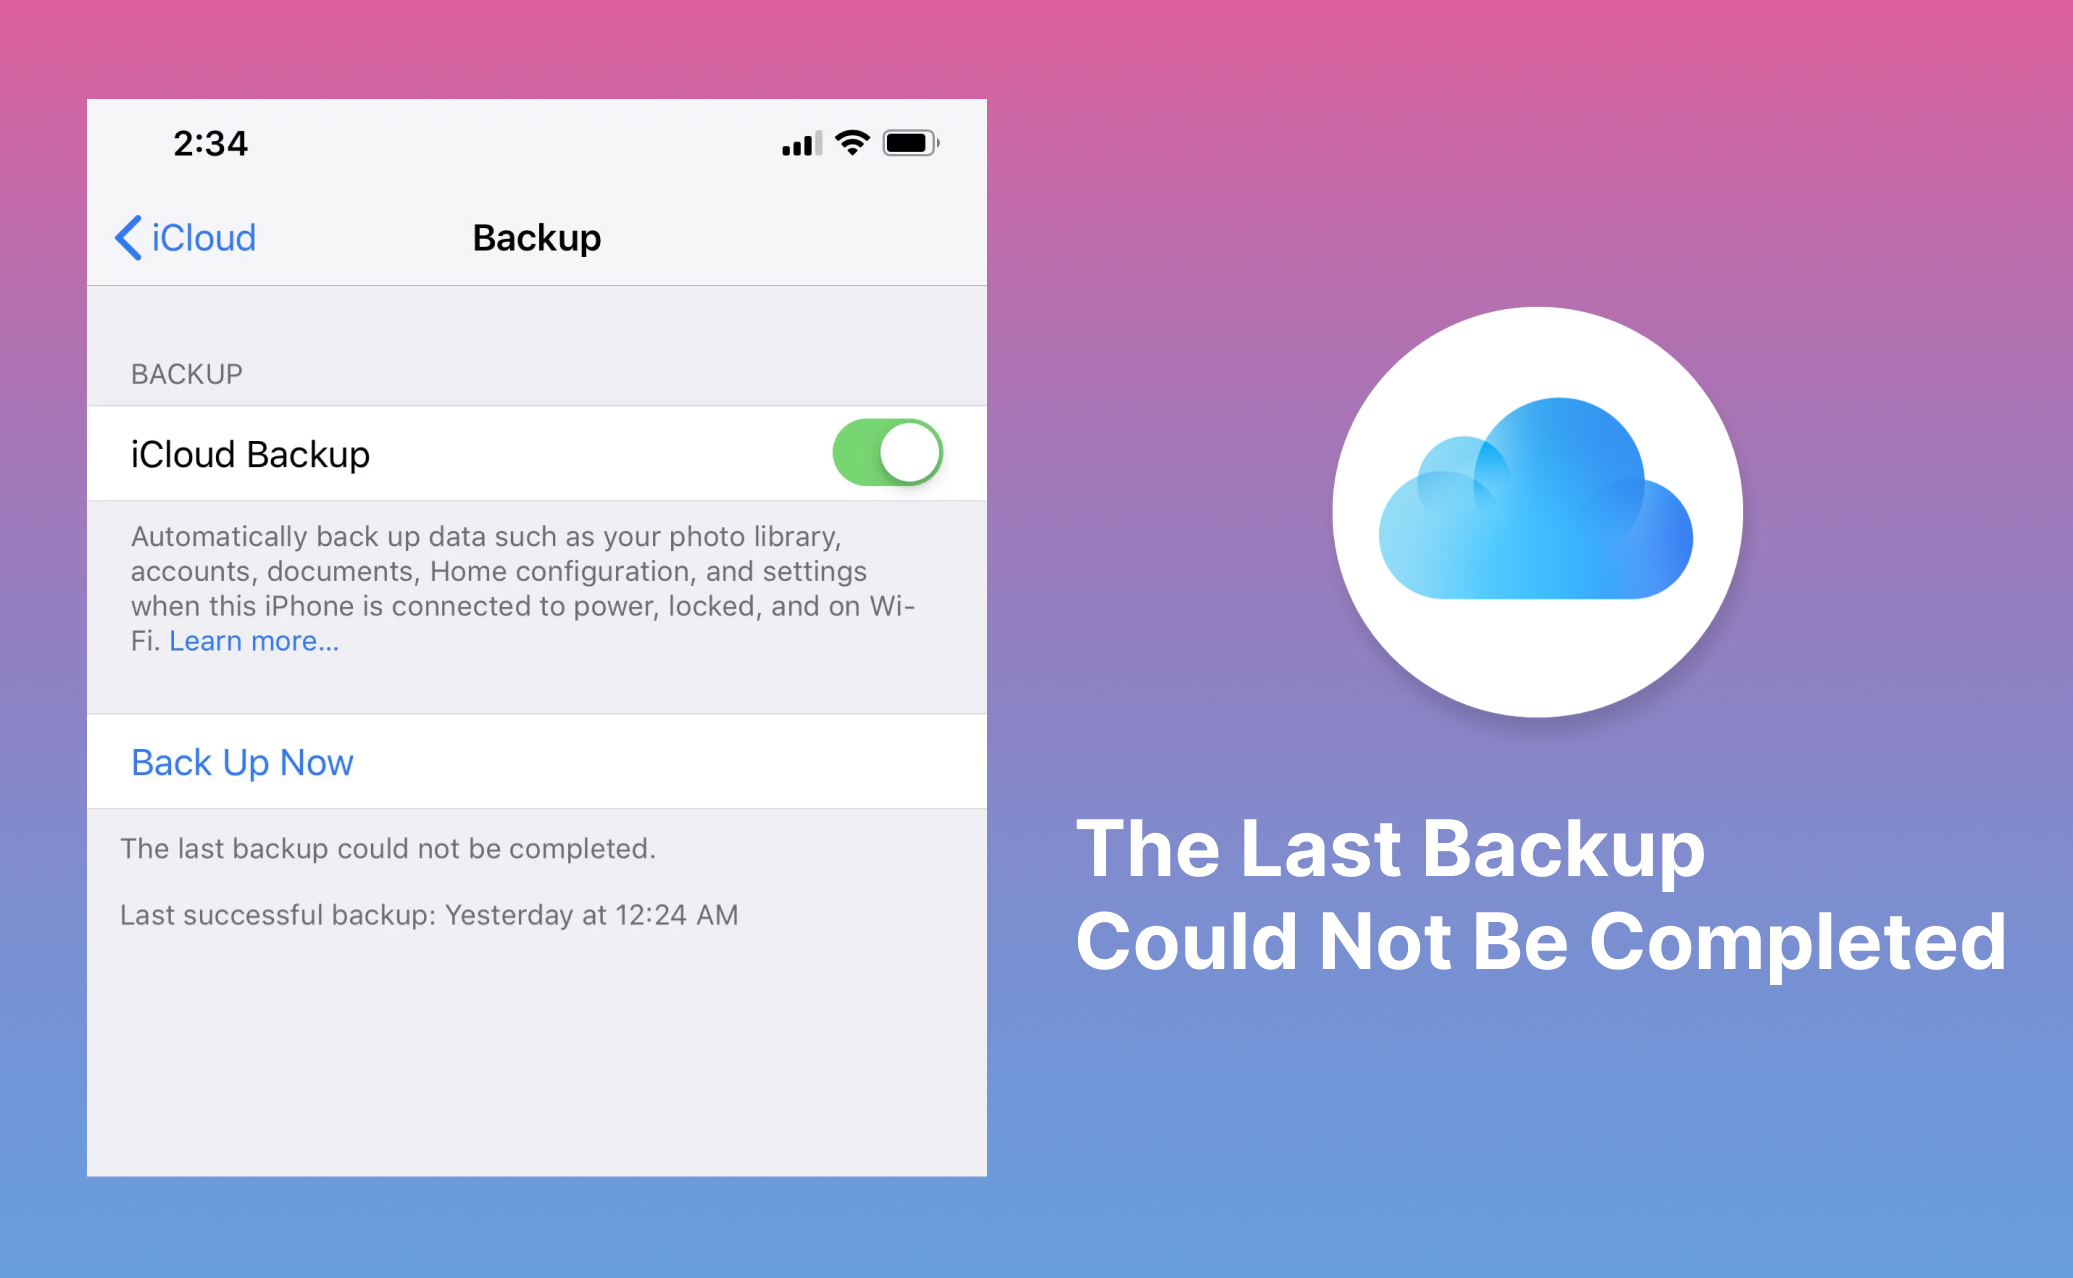 Como resolver o problema do último backup que não pôde ser concluído